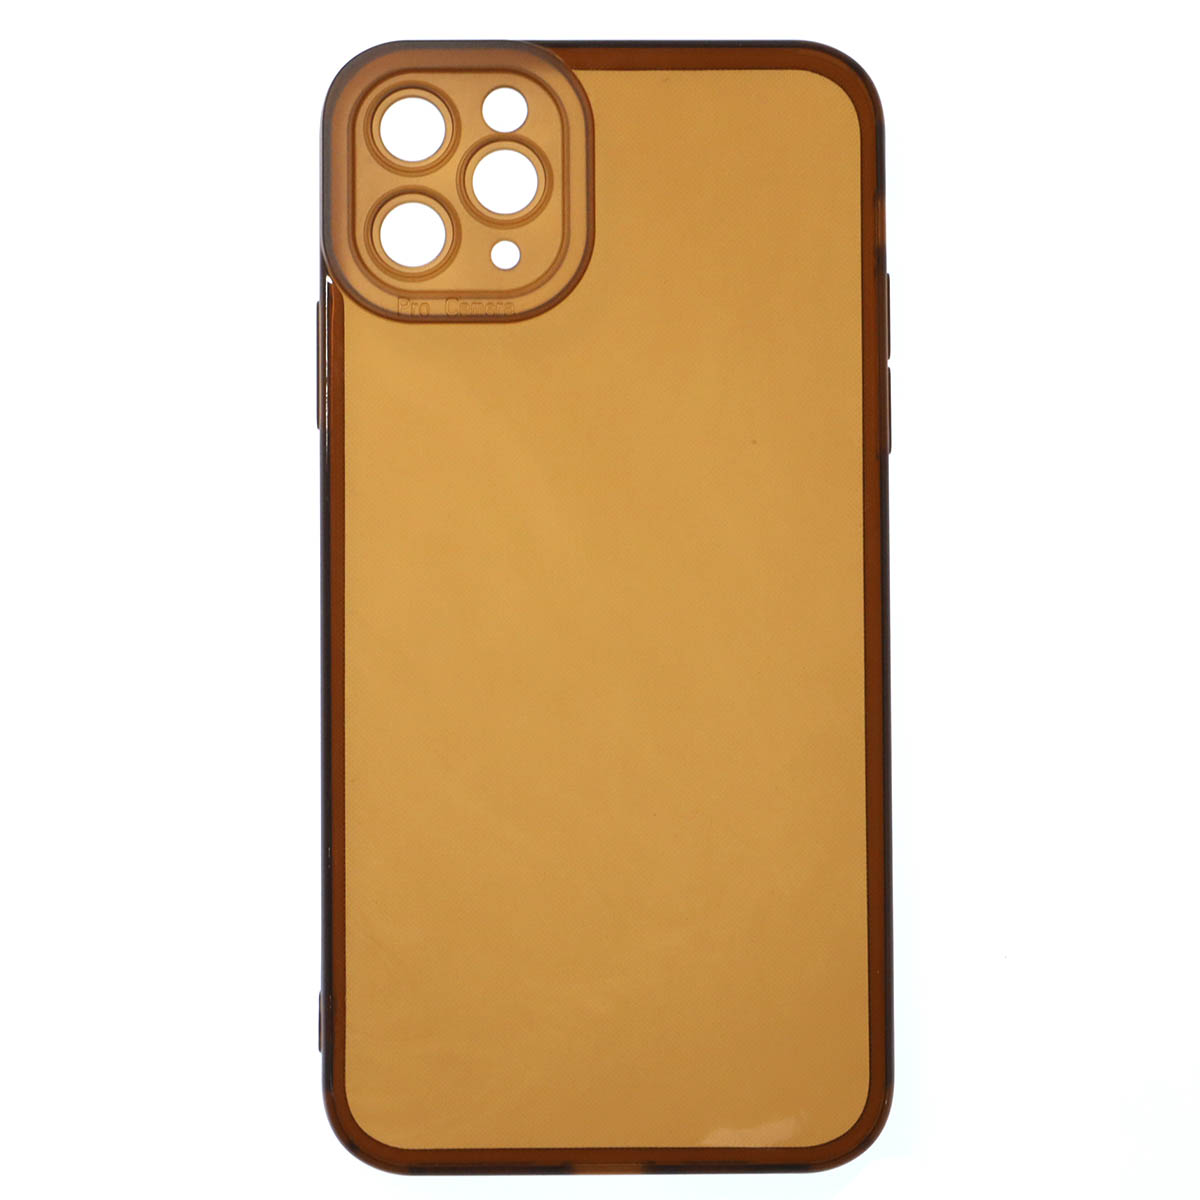 Чехол накладка CATEYES для APPLE iPhone 11 PRO MAX, защита камеры, силикон, цвет прозрачно коричневый